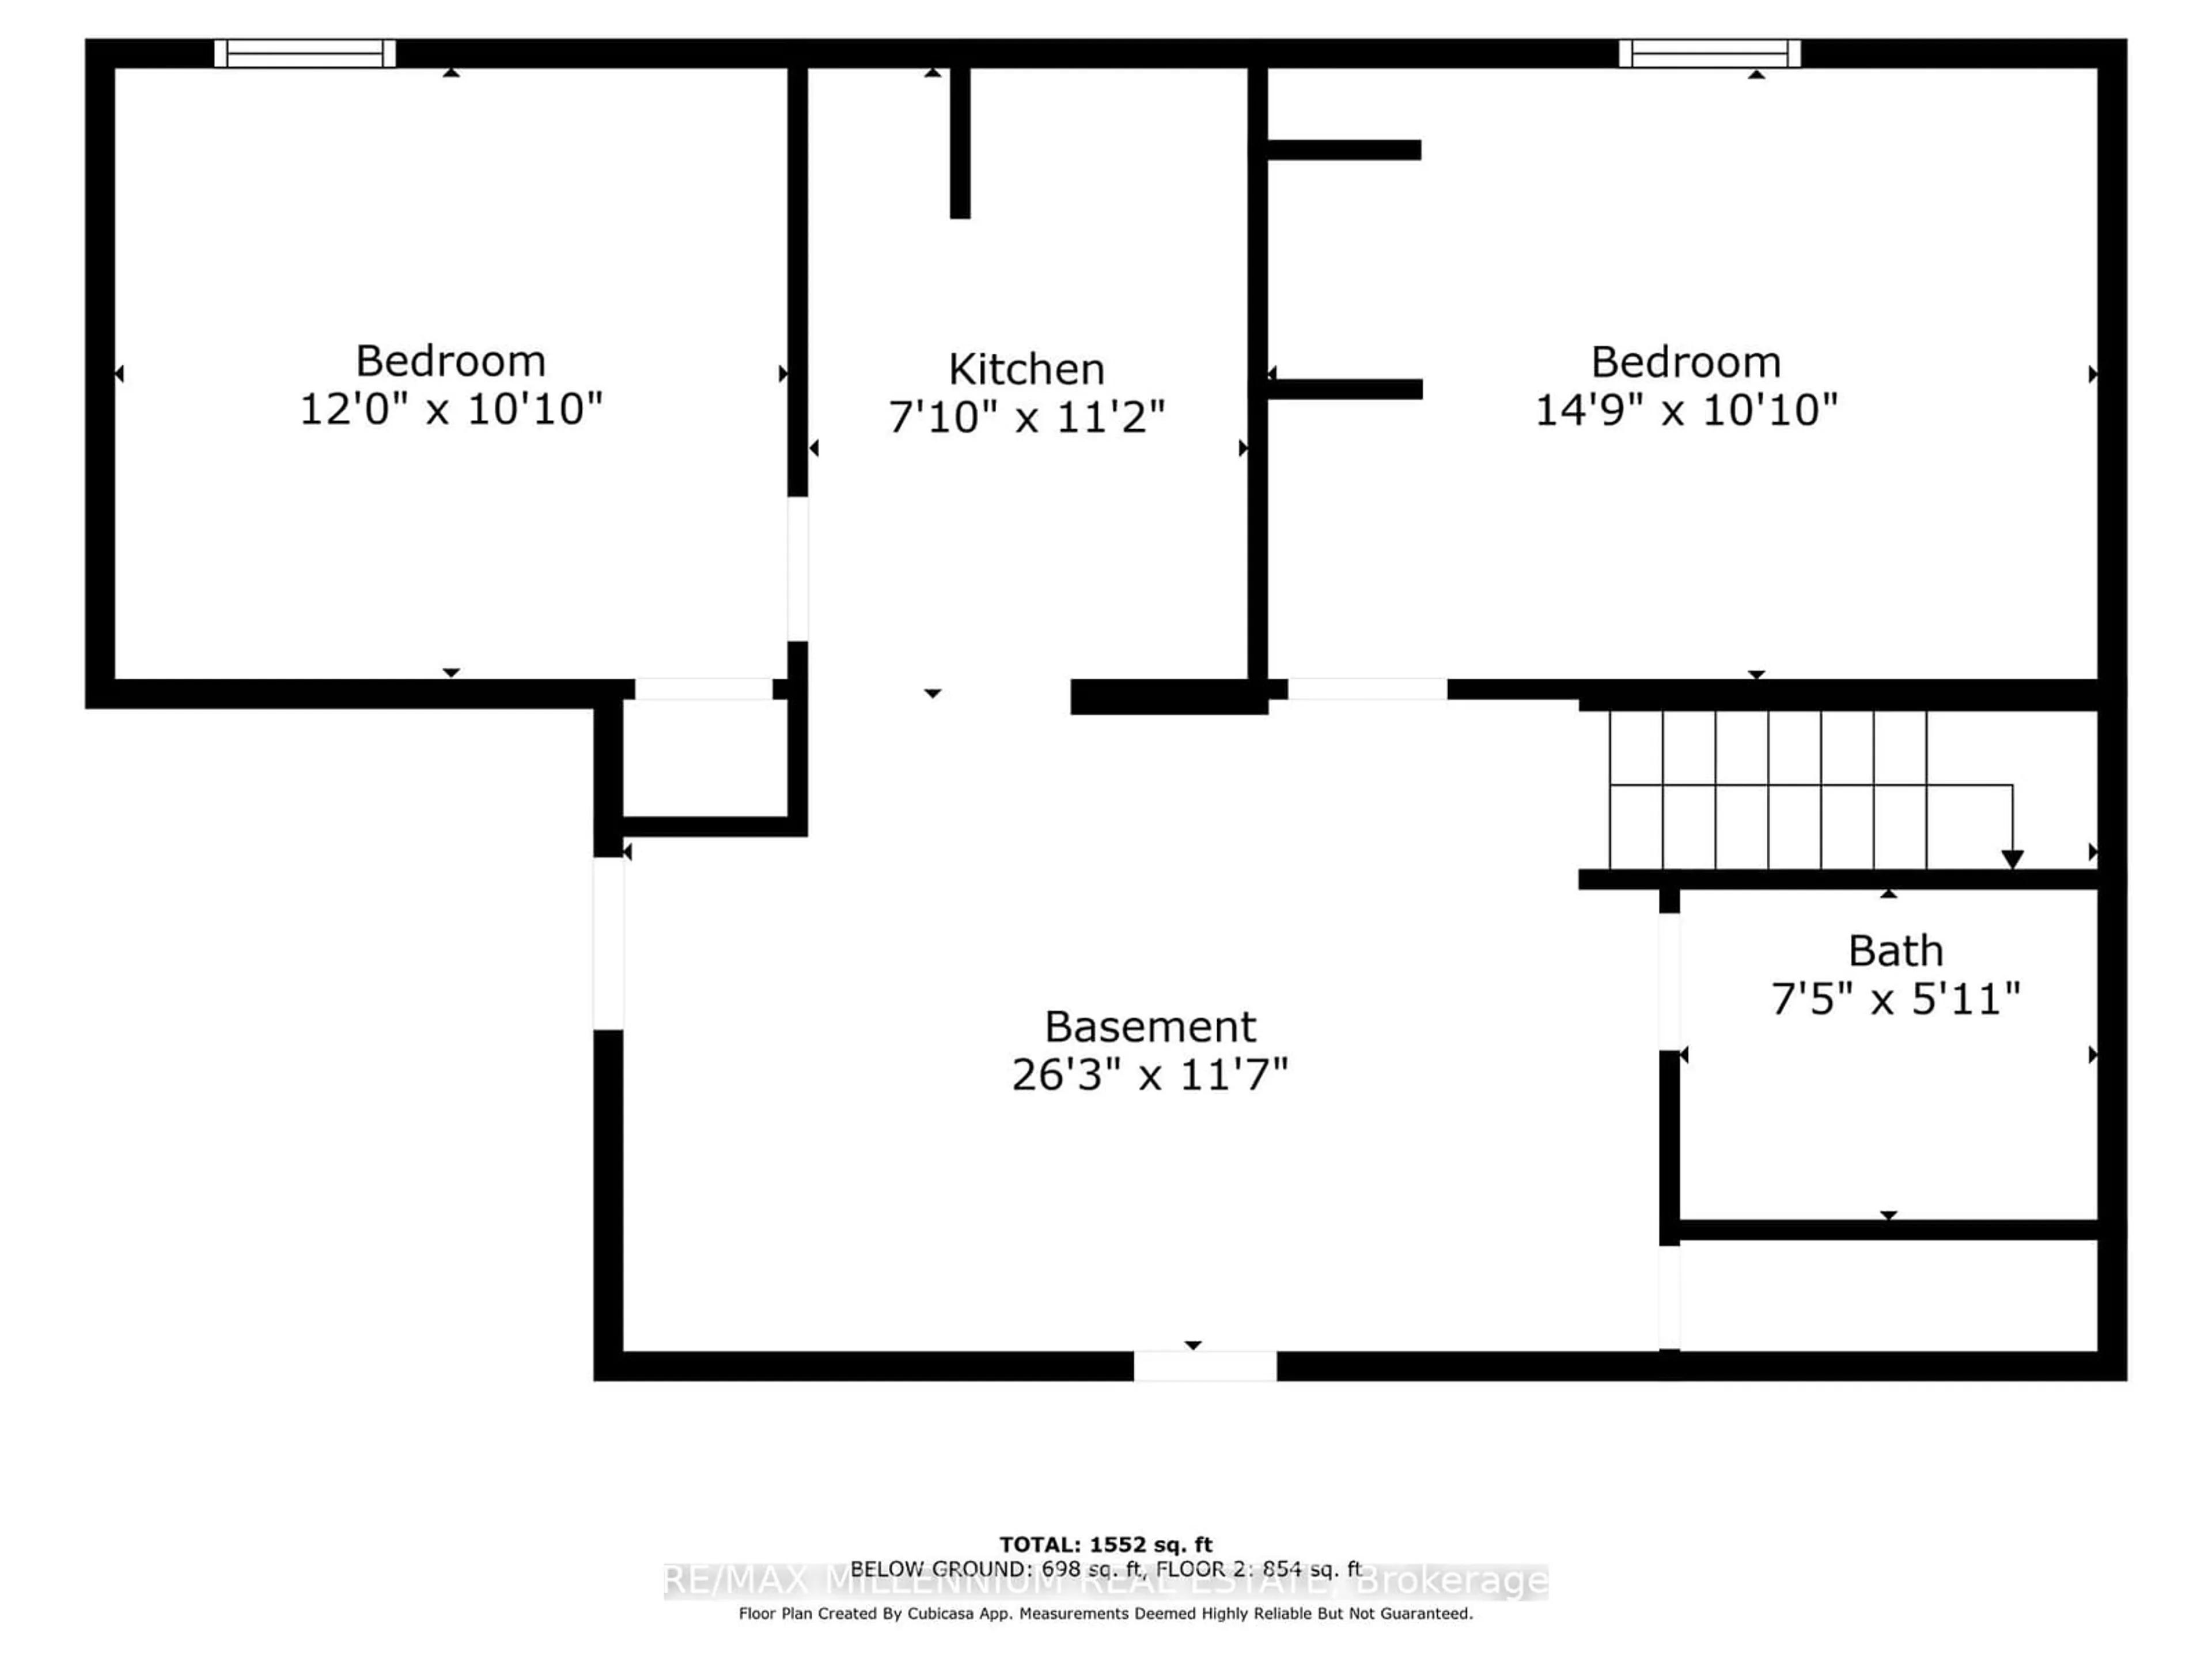 Floor plan for 346 Reynolds Rd, London Ontario N6K 2P6